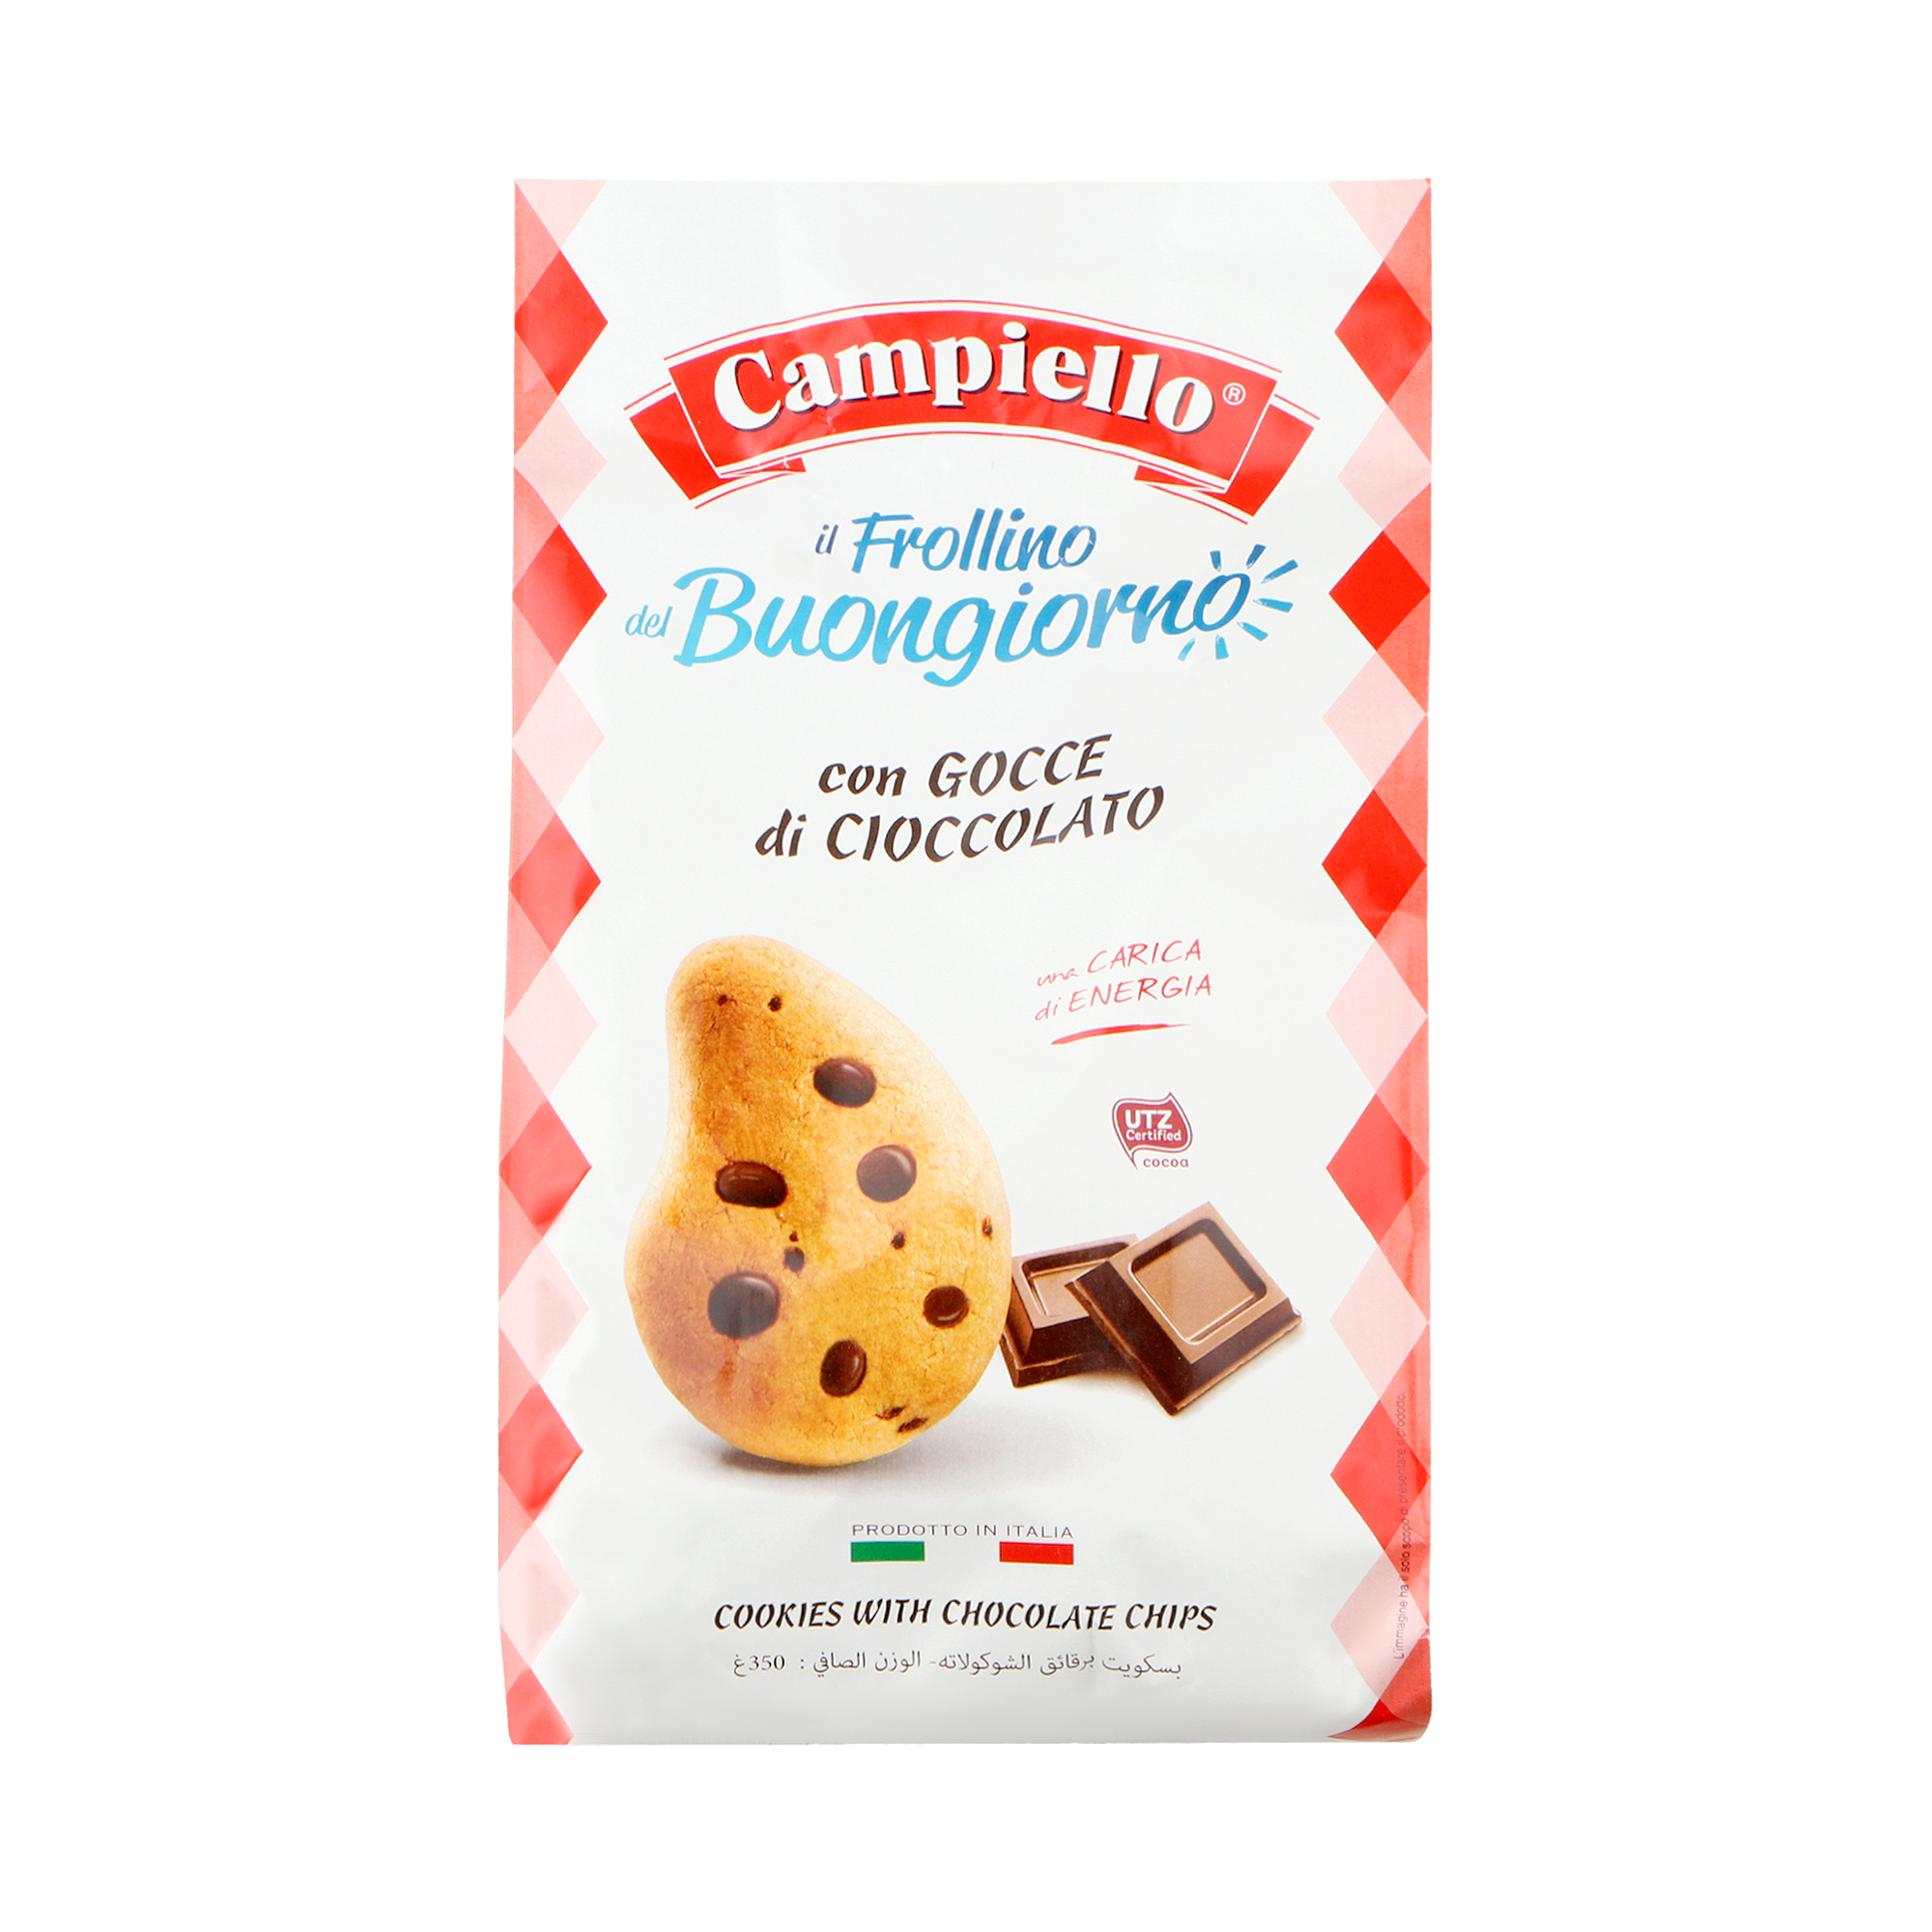 Печенье Campiello il Frollino del Buongiorno с шоколадом 350 г драже с молочным шоколадом м